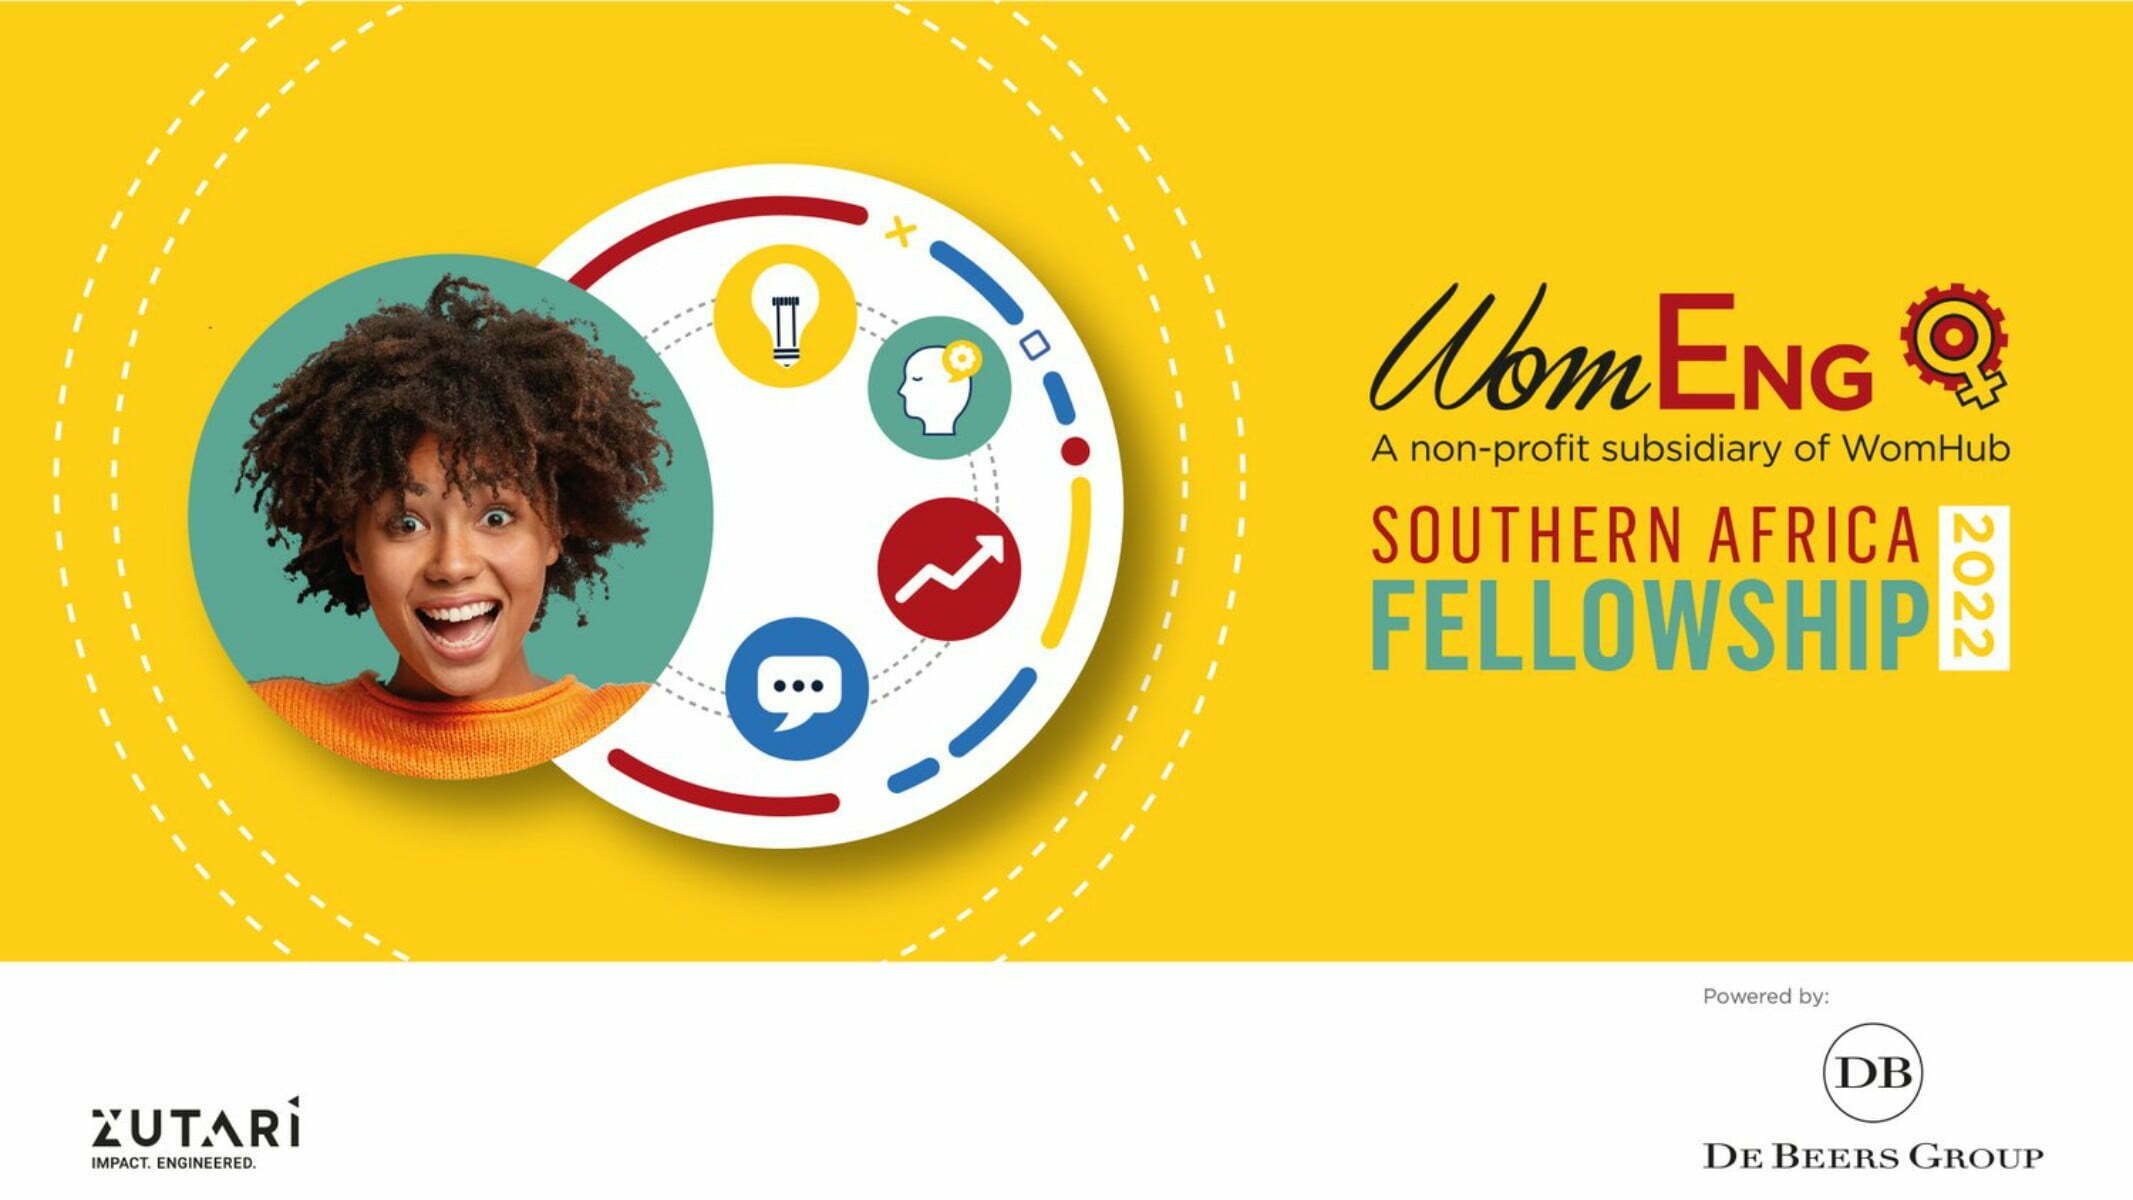 WomEng Southern Africa Fellowship Programme 2022-2023